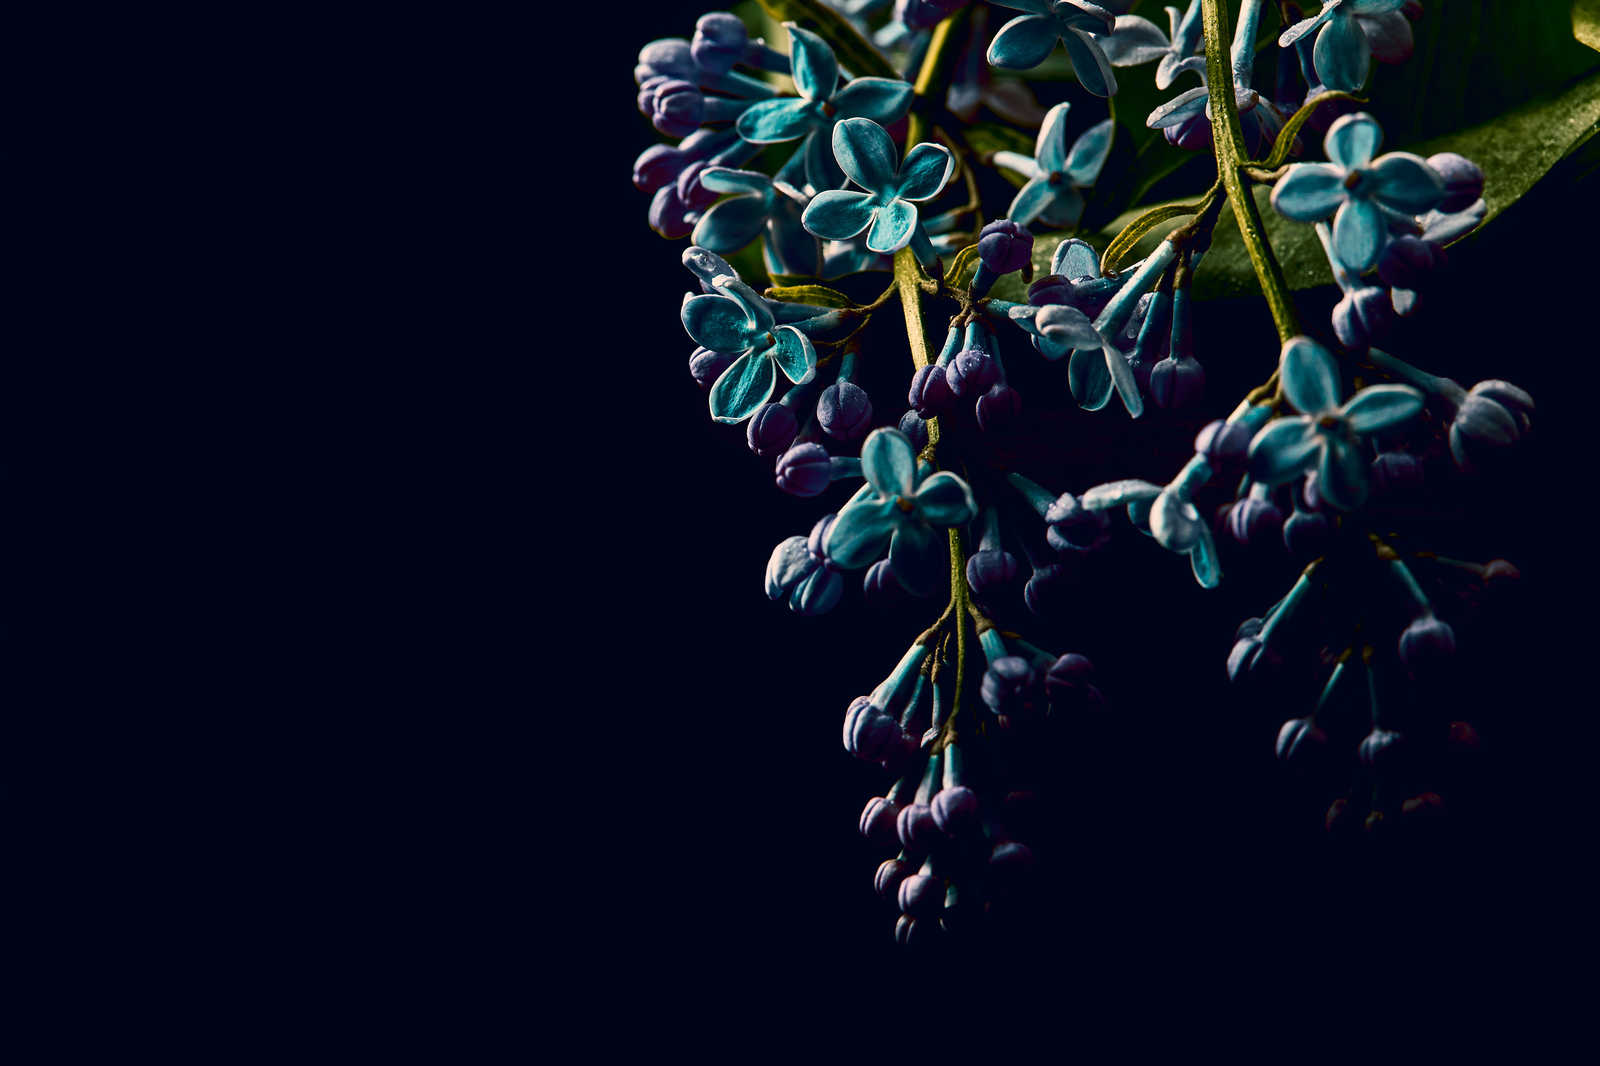             Leinwandbild Blumen auf schwarzen Hintergrund Close-Up – 0,90 m x 0,60 m
        